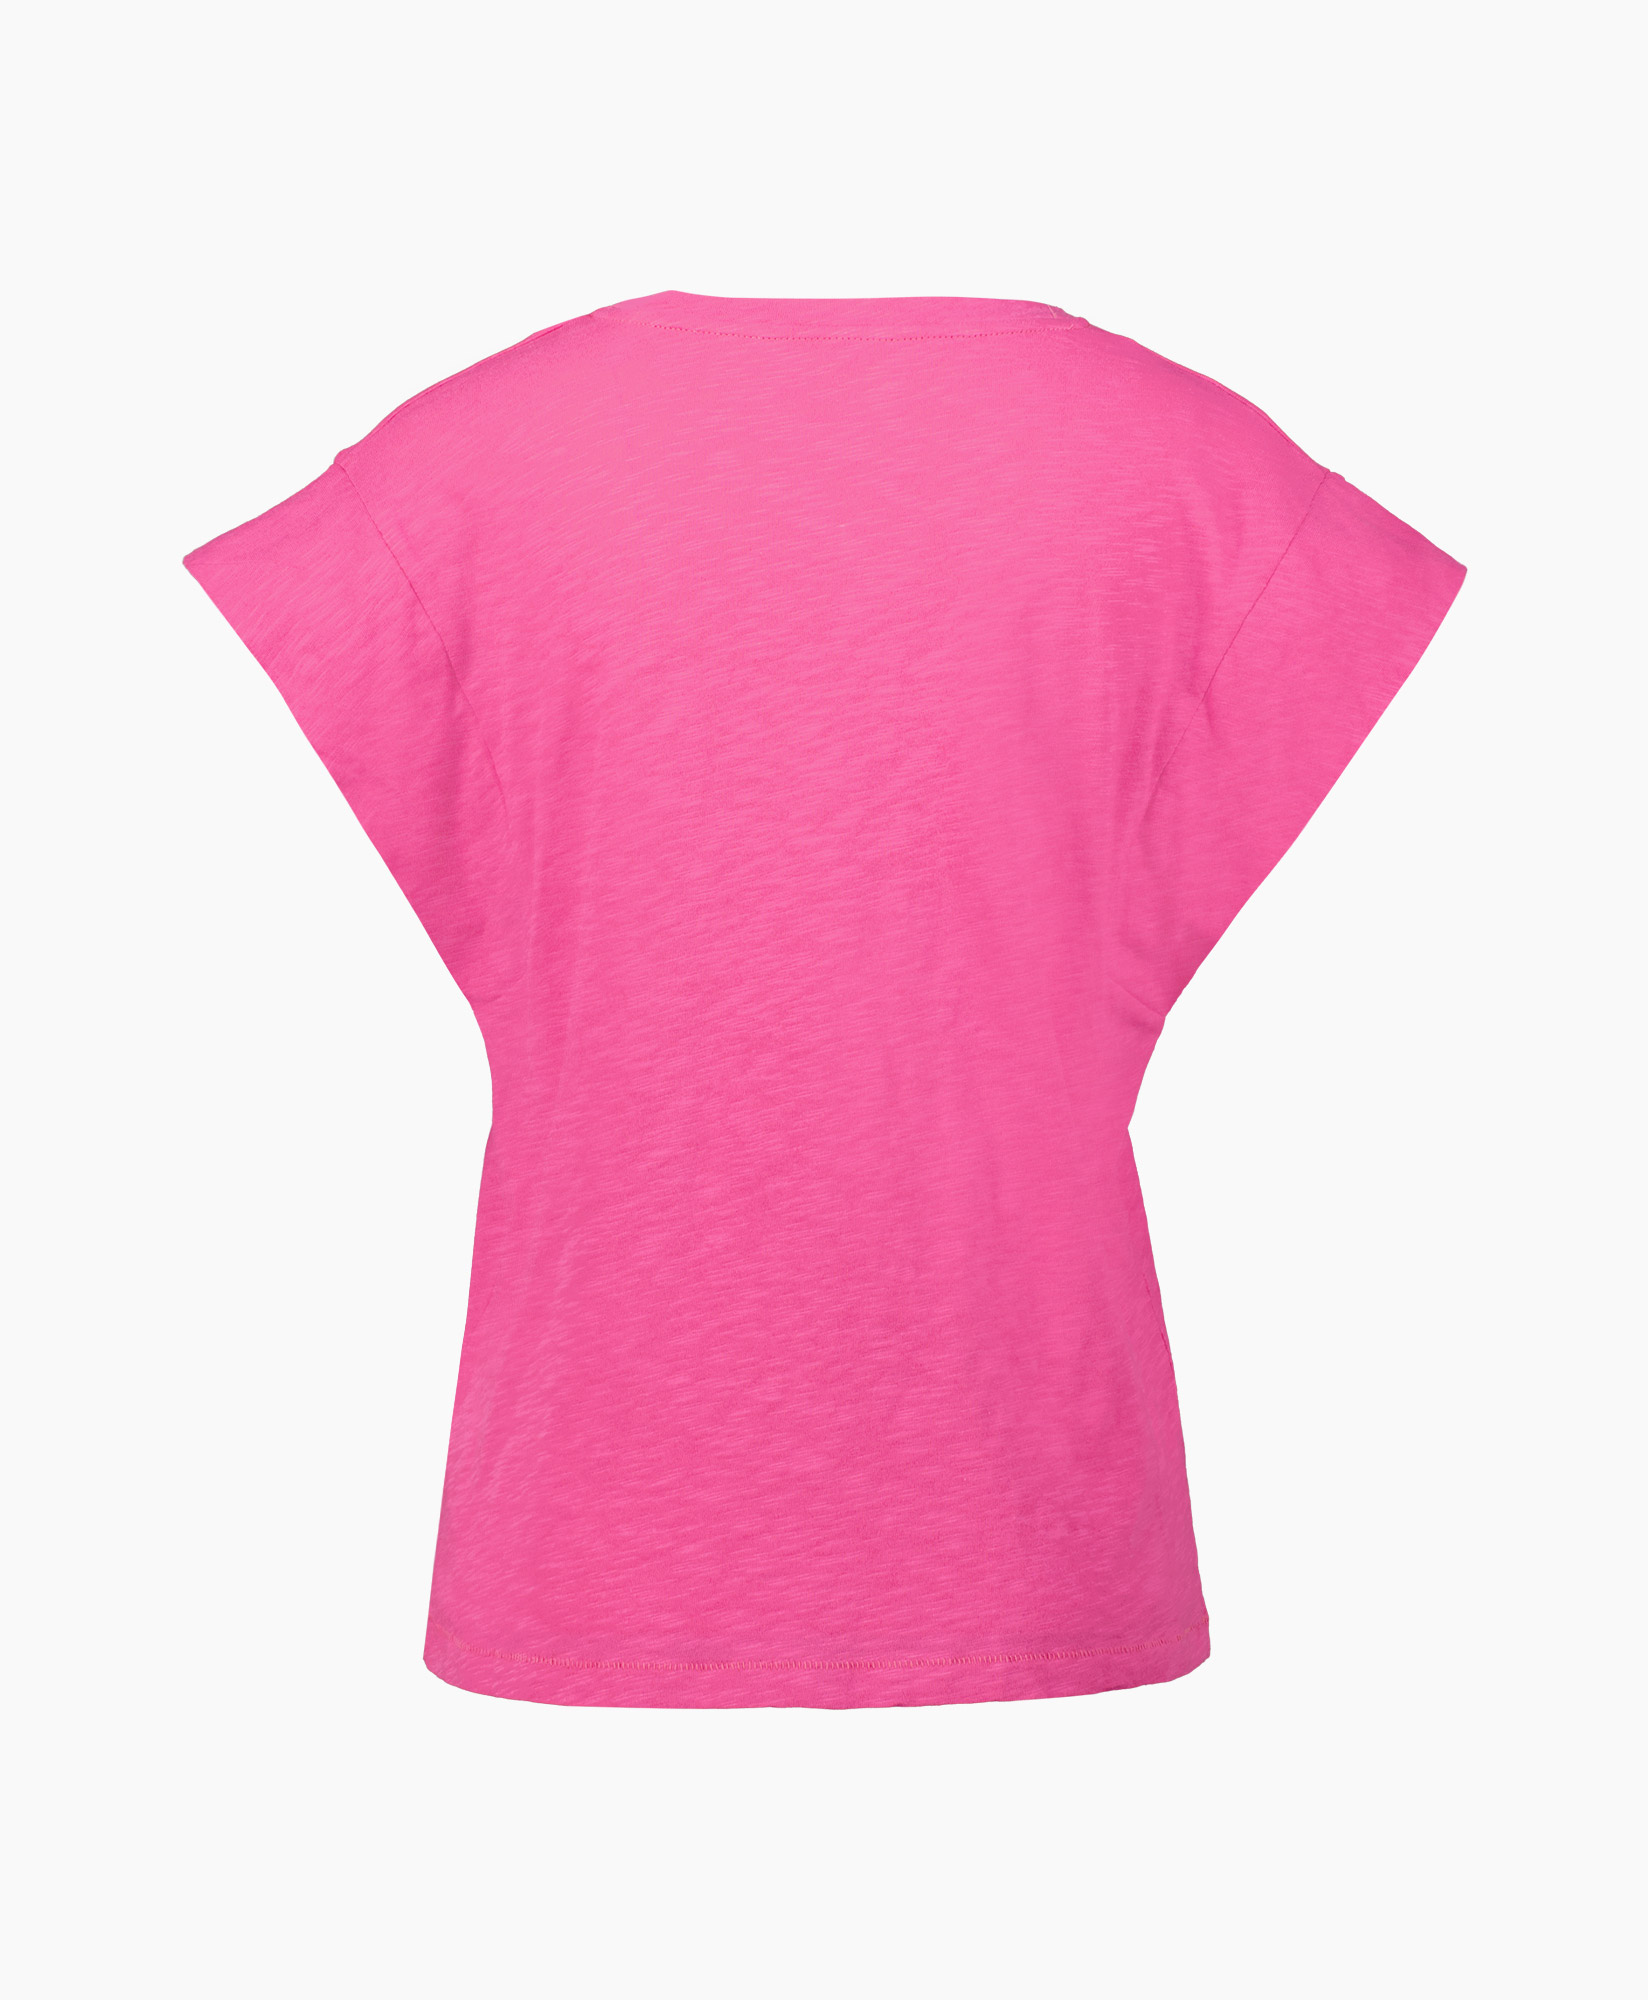 Ba&sh T-shirt Korte Mouw 1e23viny Pink